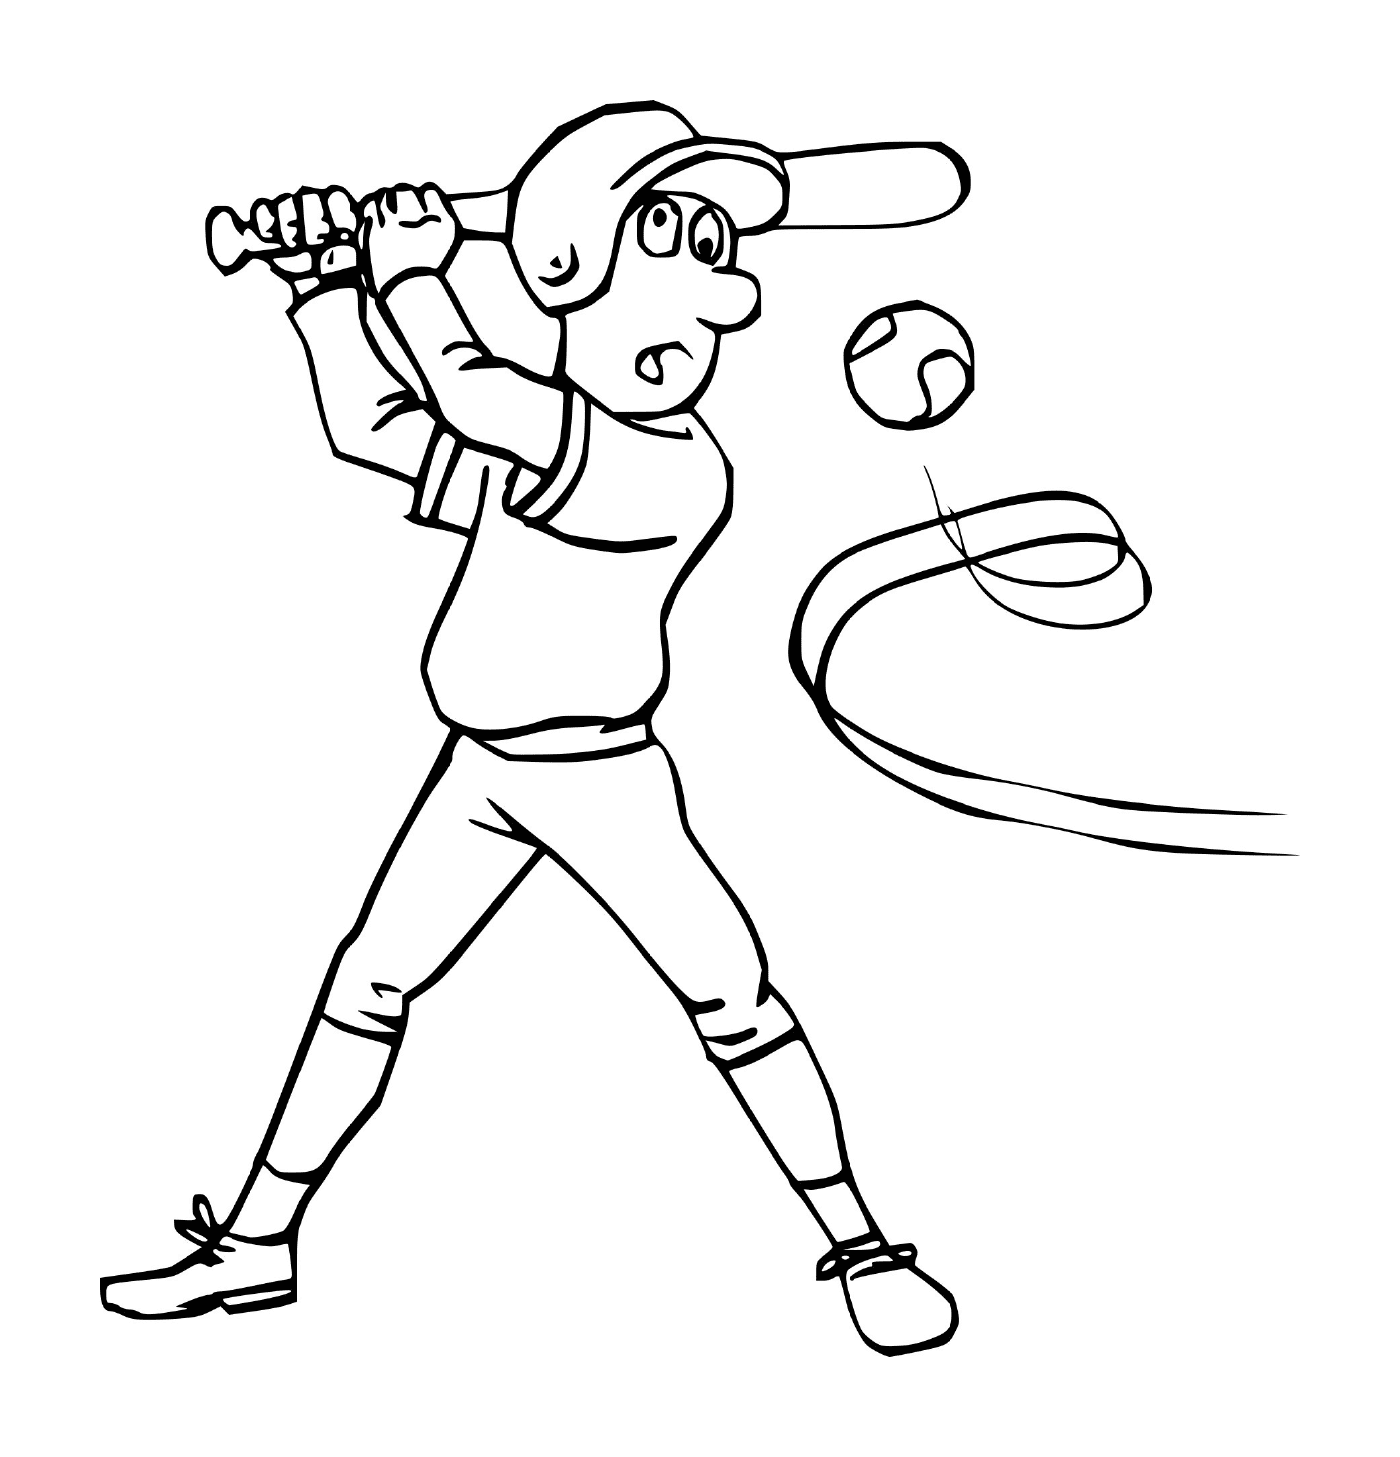  Deporte, béisbol, hombre golpeando una pelota 